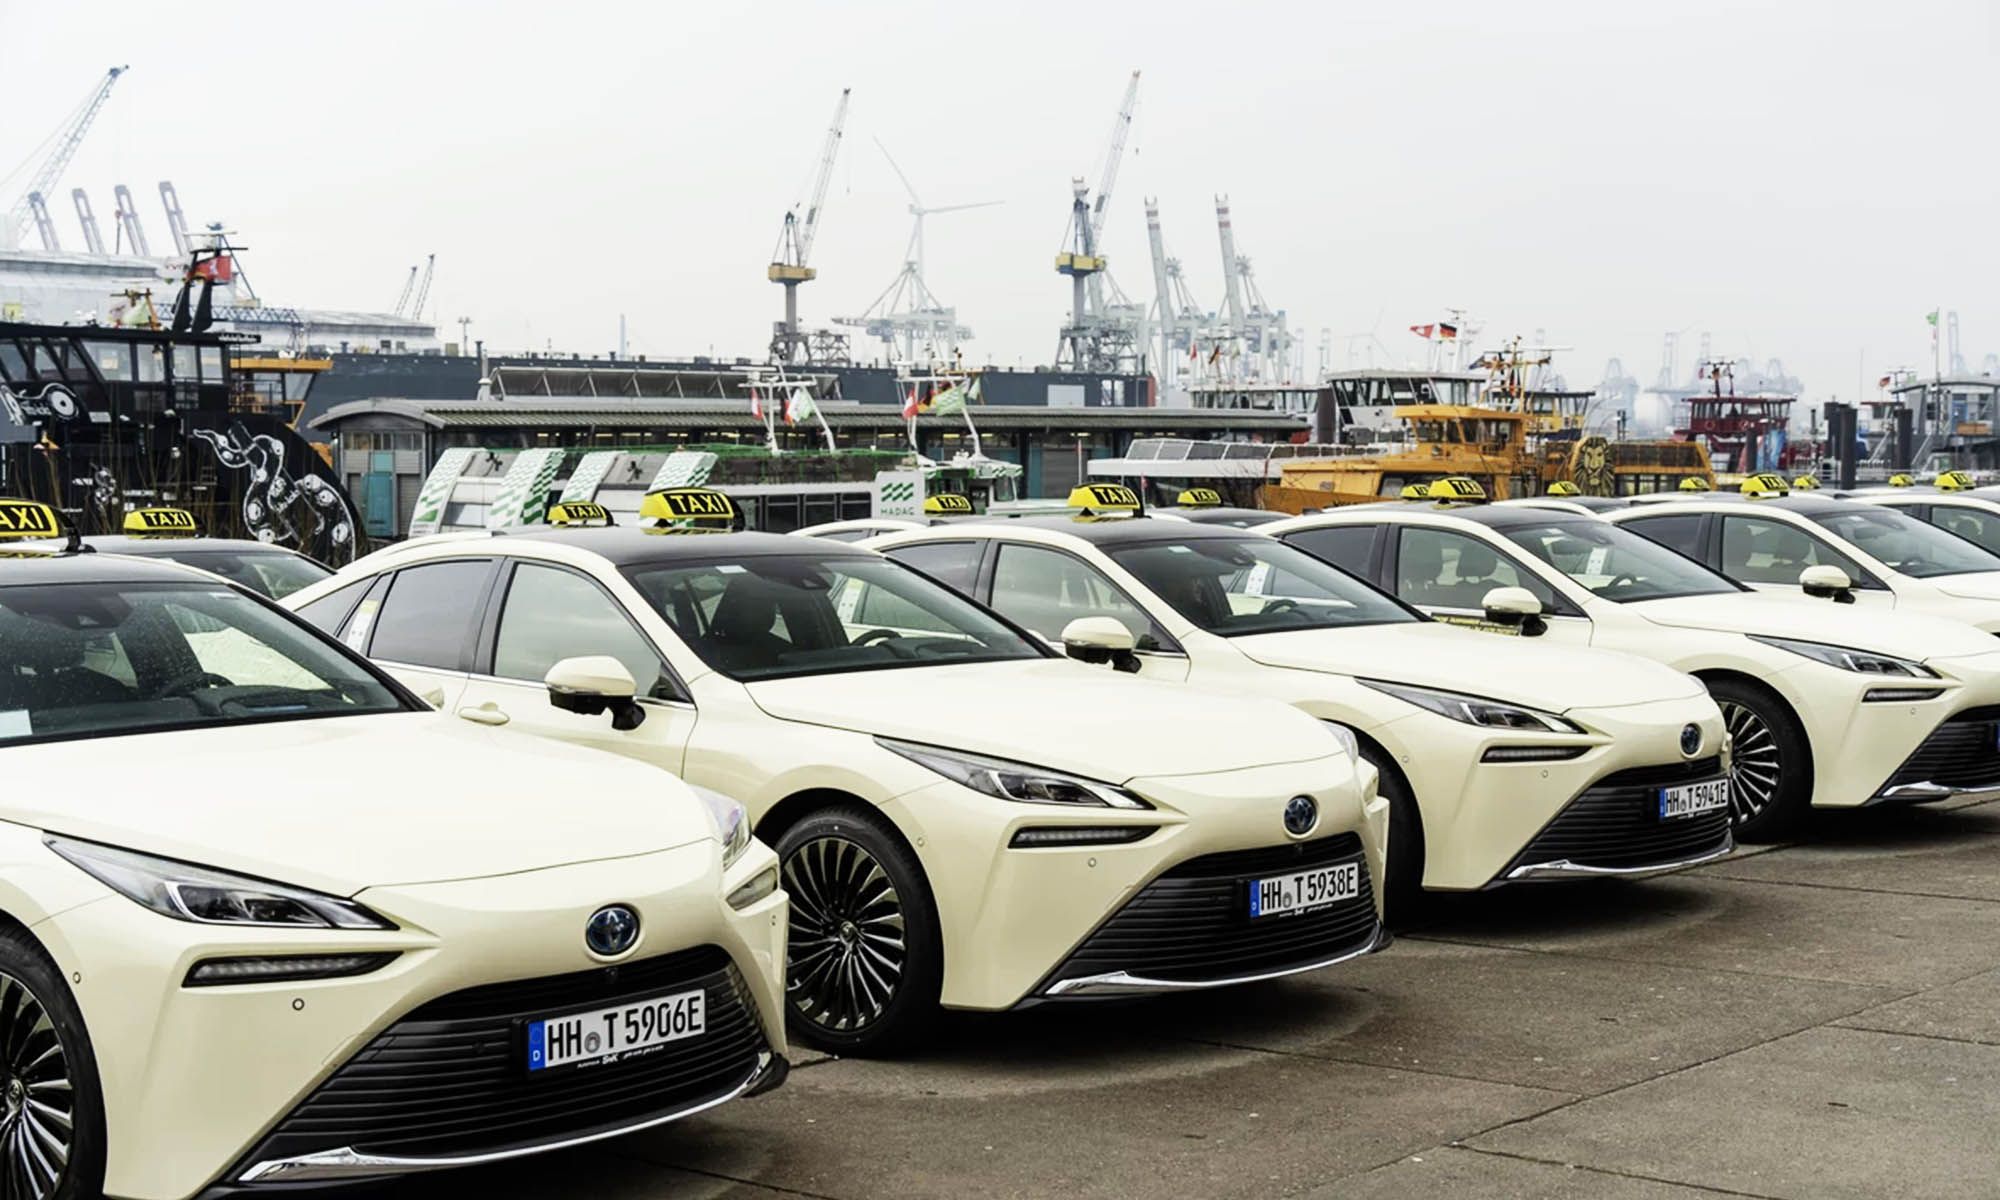 Las 25 unidades del Toyota Mirai acondicionadas como taxi ya han sido entregadas a la compañía de taxis más grande de Hamburgo, Best Taxi.